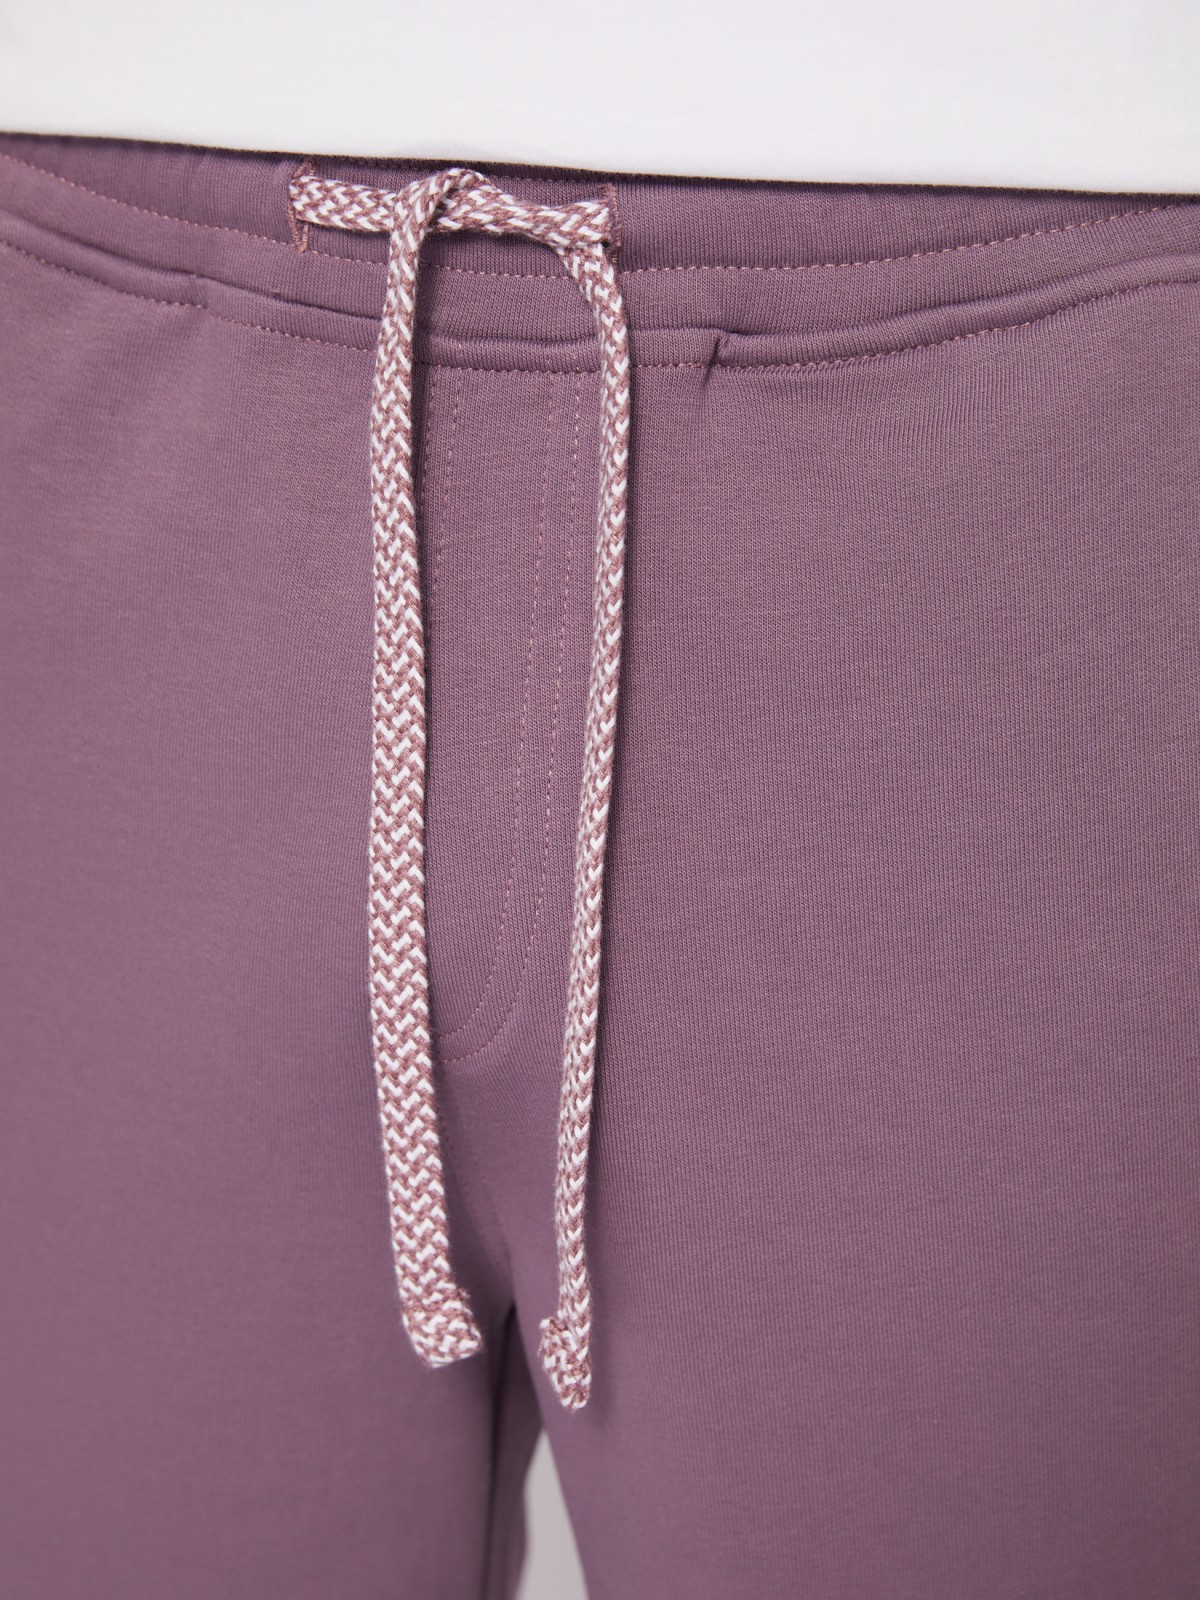 Трикотажные шорты из хлопка на резинке zolla 014237J2Q052, цвет фиолетовый, размер S - фото 3